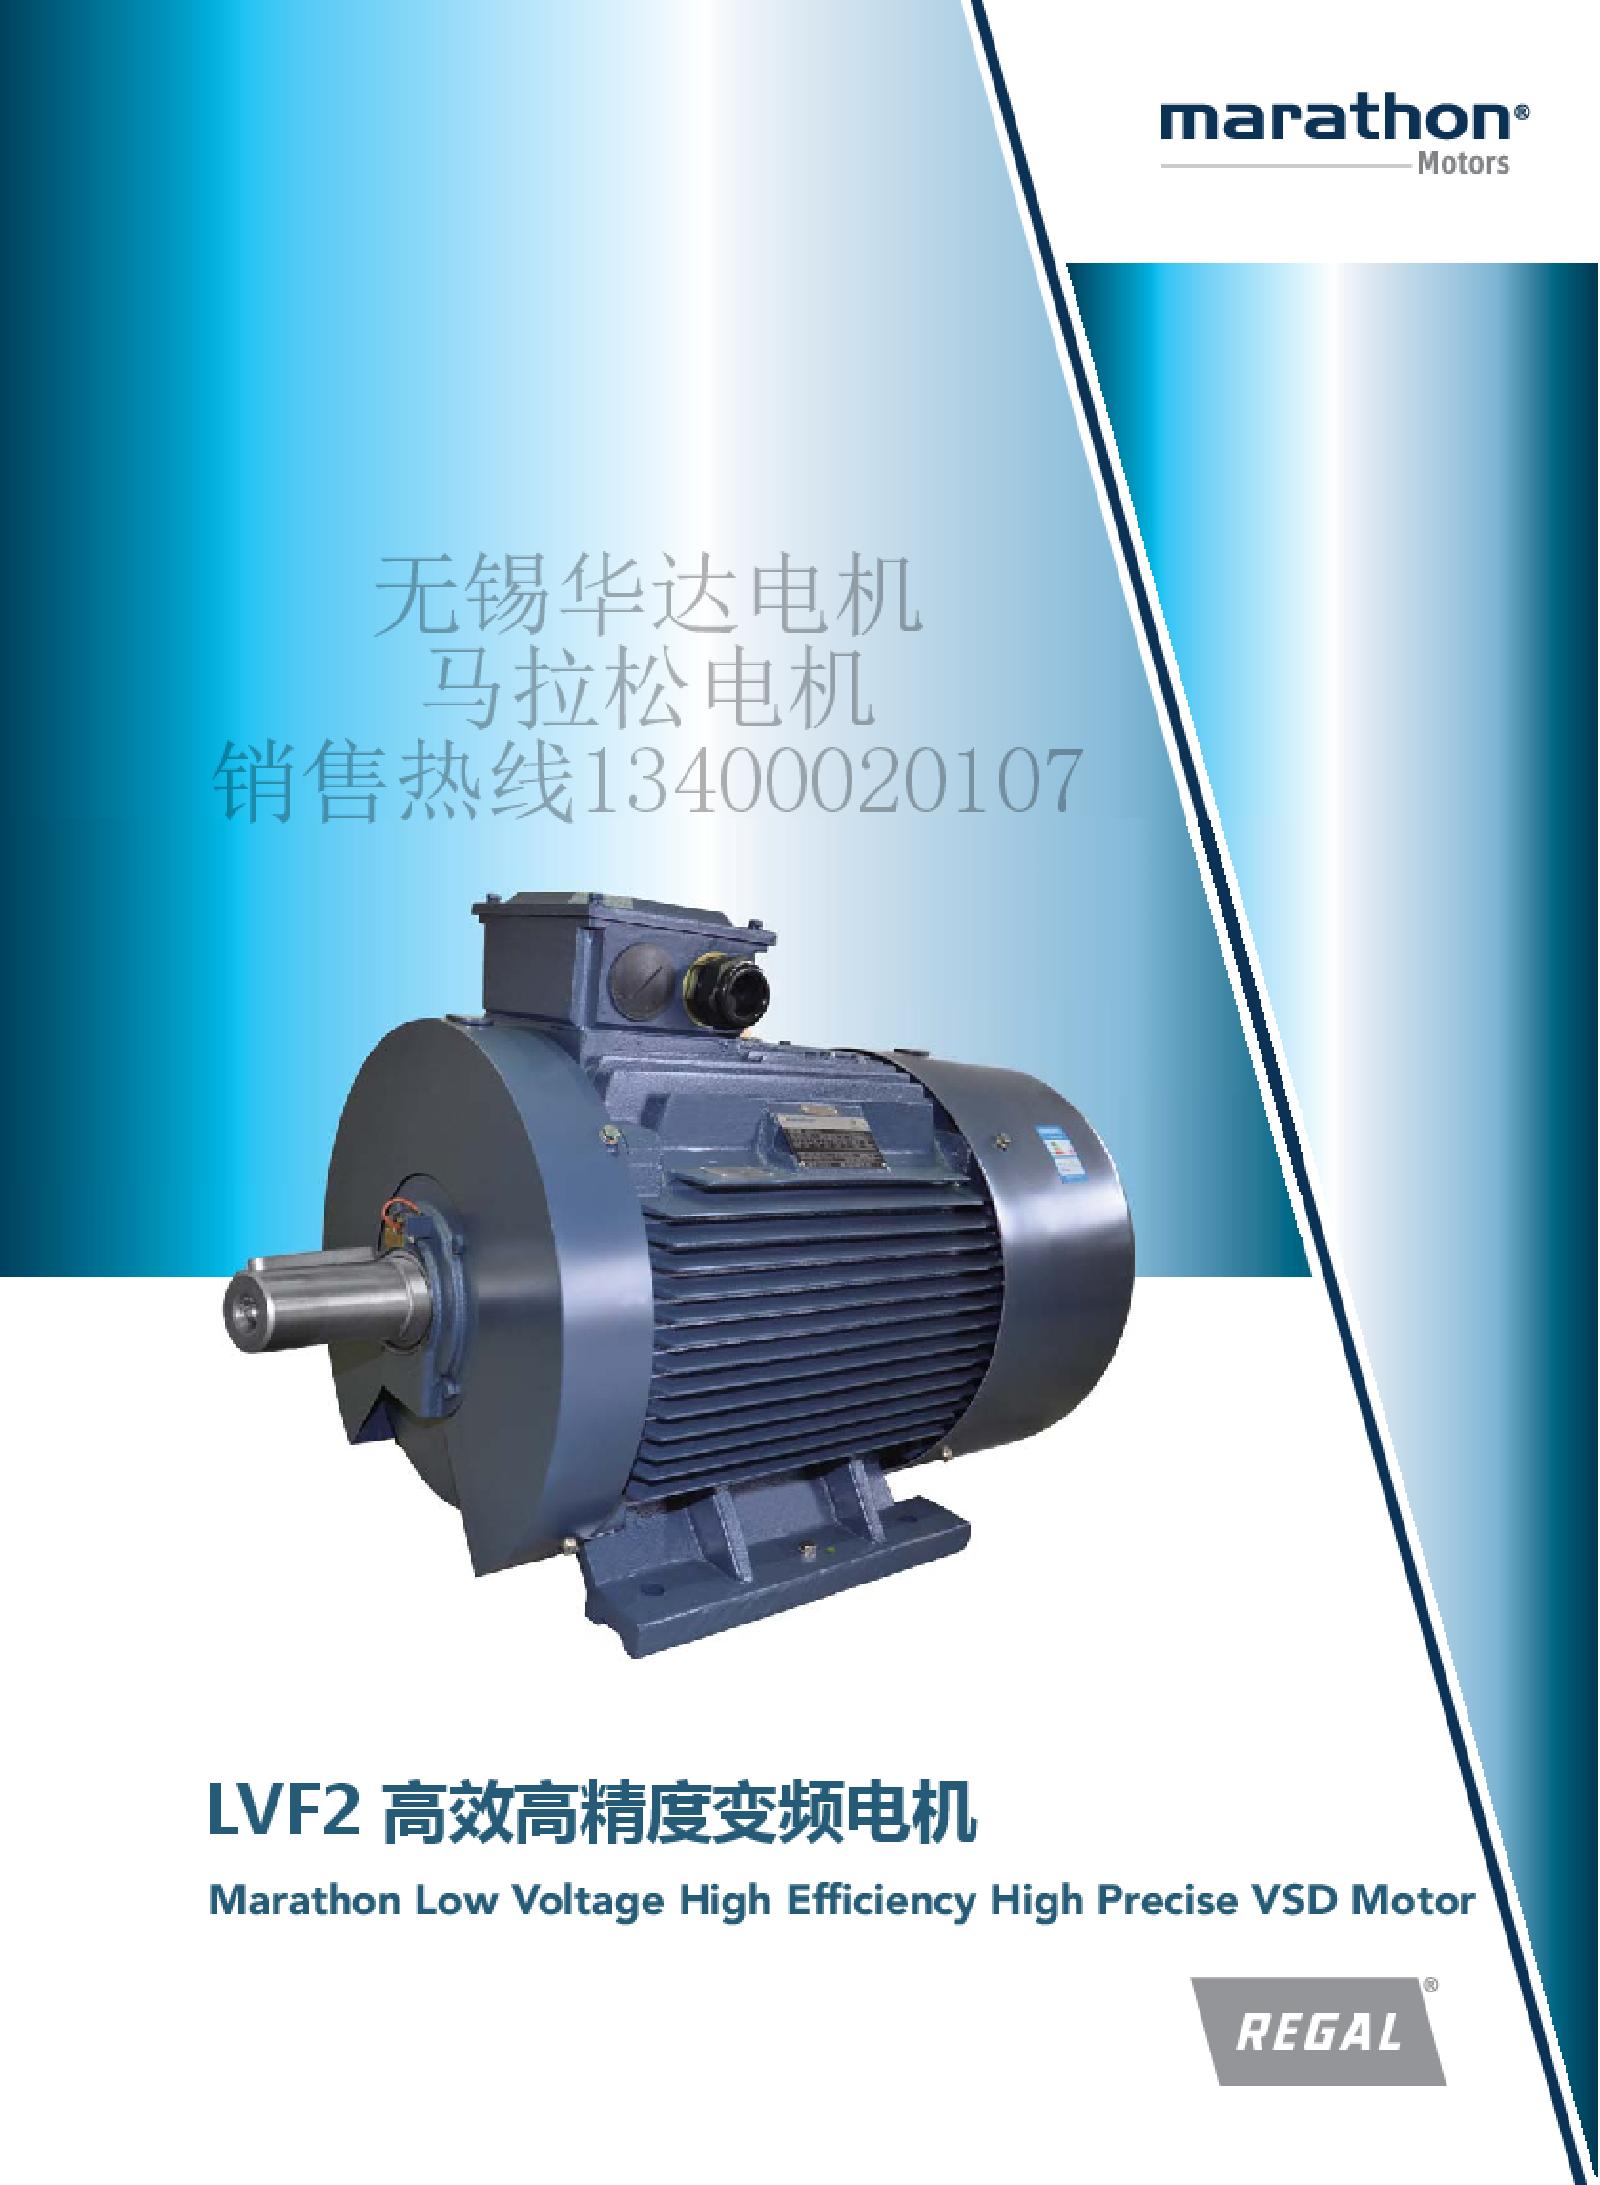 无锡华达电机有限公司马拉松电机LVF2变频电机IE2